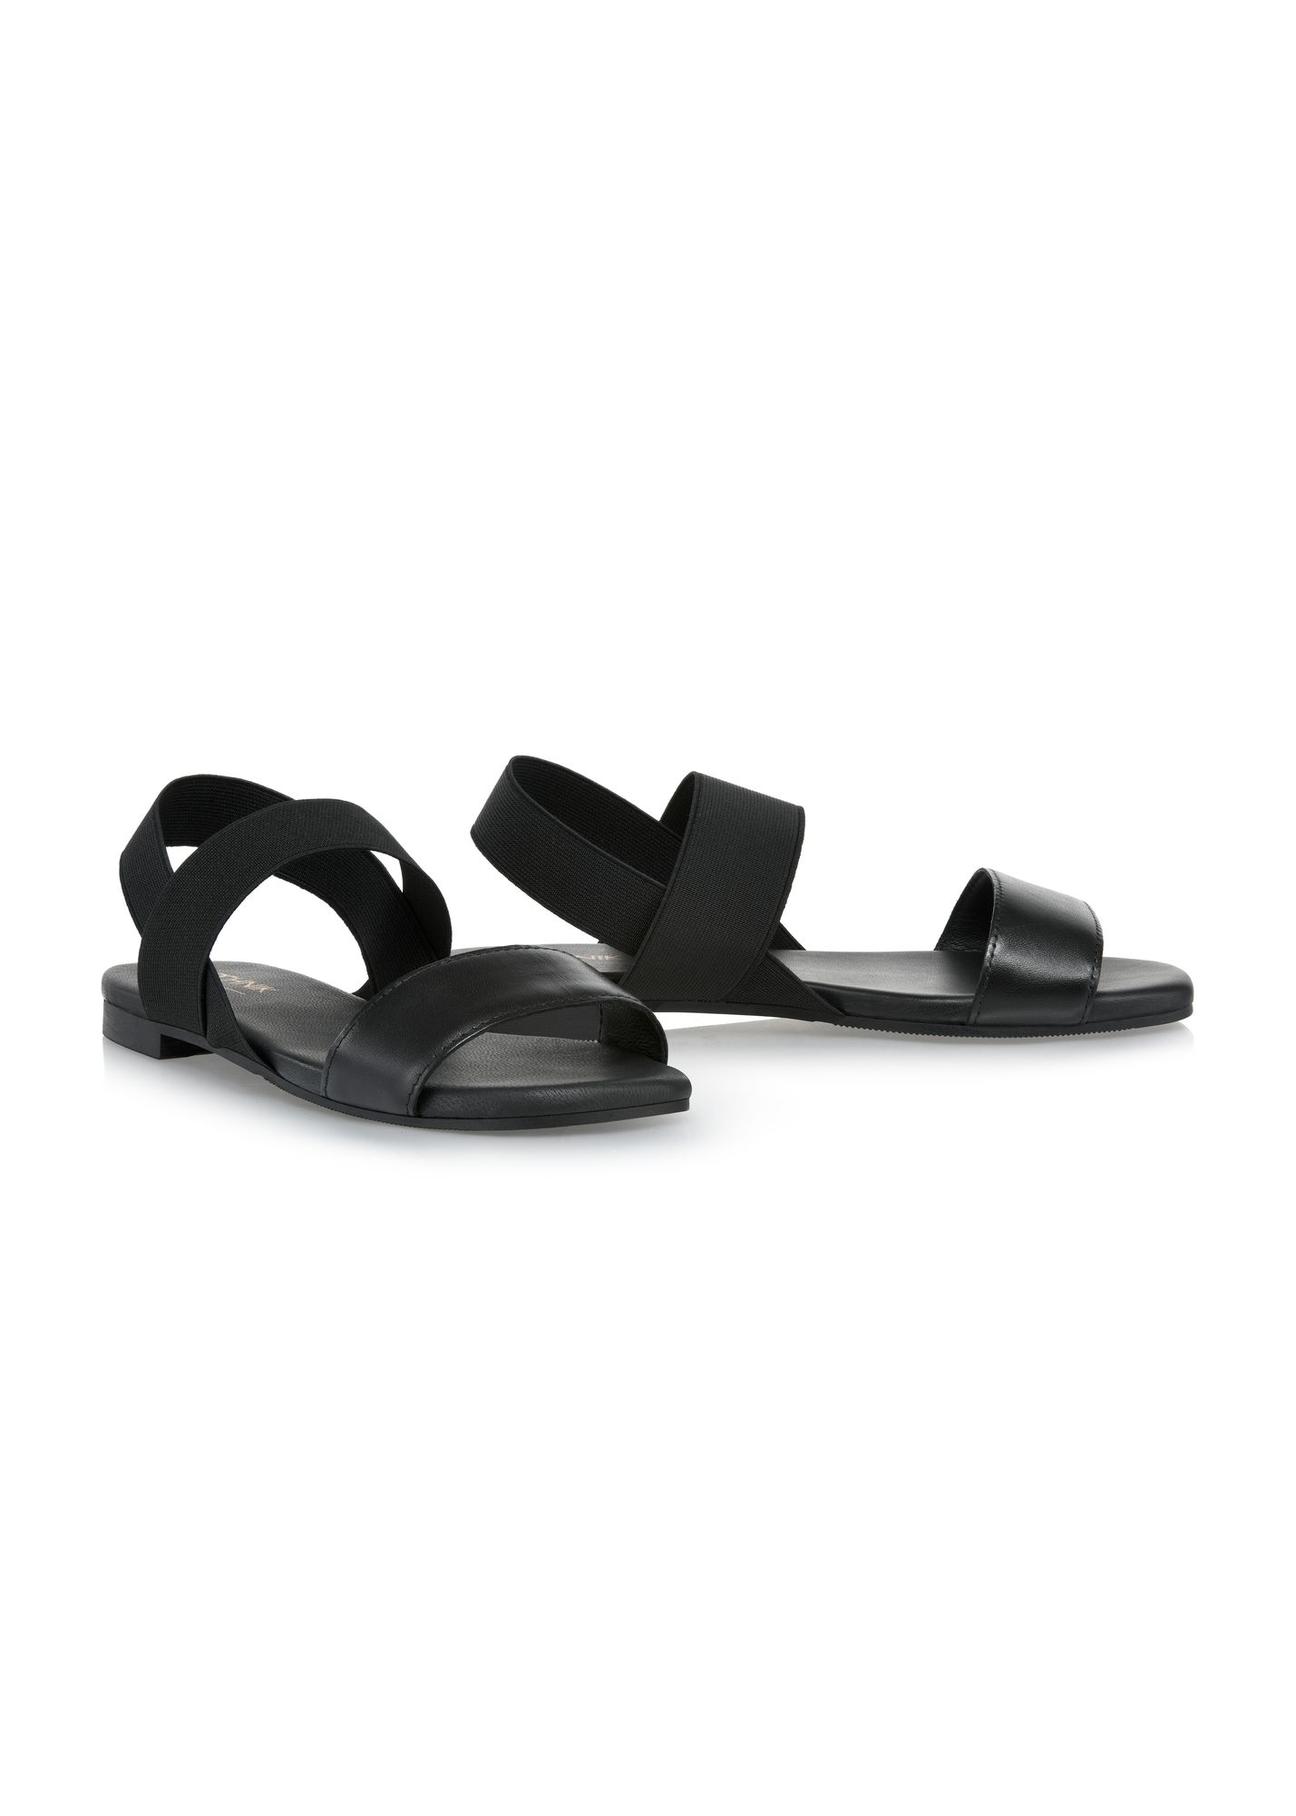 Skórzane czarne sandałki na gumę BUTYD-1046-99(W24)